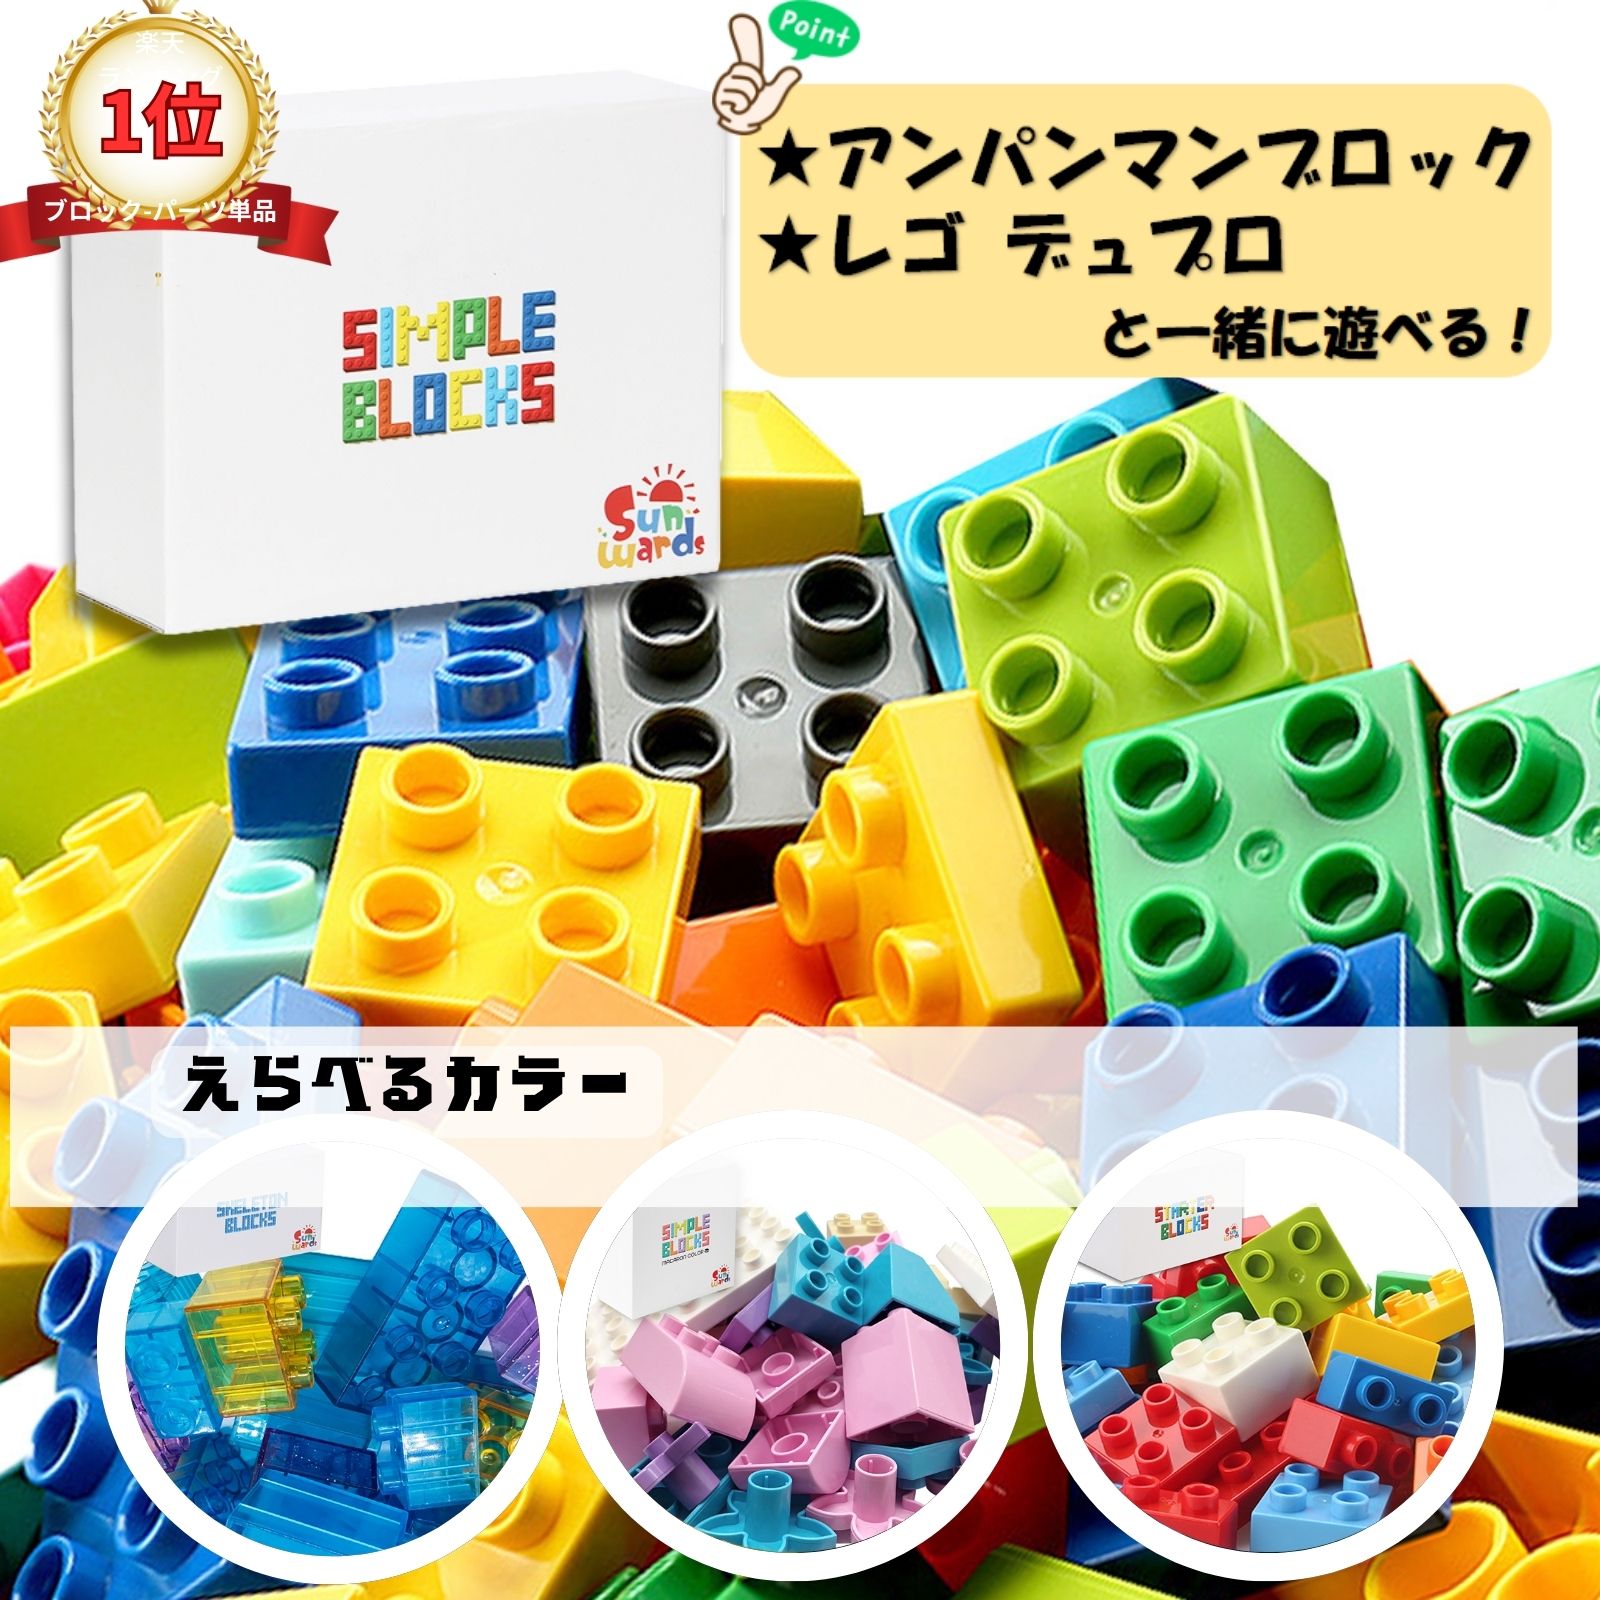  блок объект возраст 1 лет ~ Lego Duplo Lego Duplo блок покупка пара .Sunwards официальный основы блок много Anpanman блок 500g Random 90 деталь соответствует 